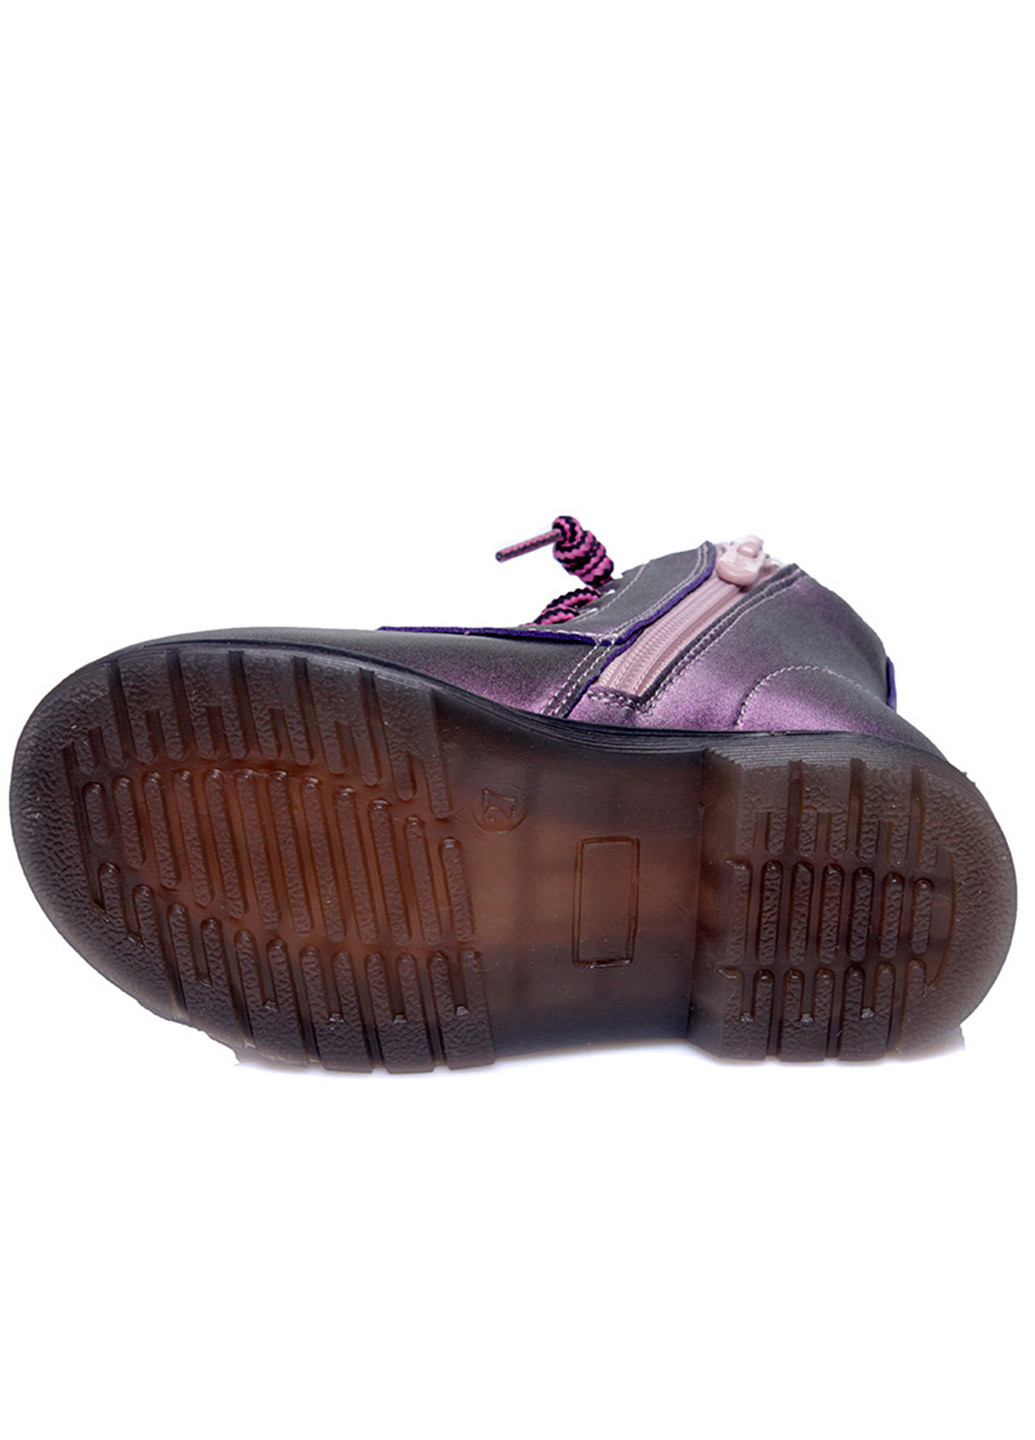 Фиолетовые кэжуал осенние ботинки детские для девочки Weestep